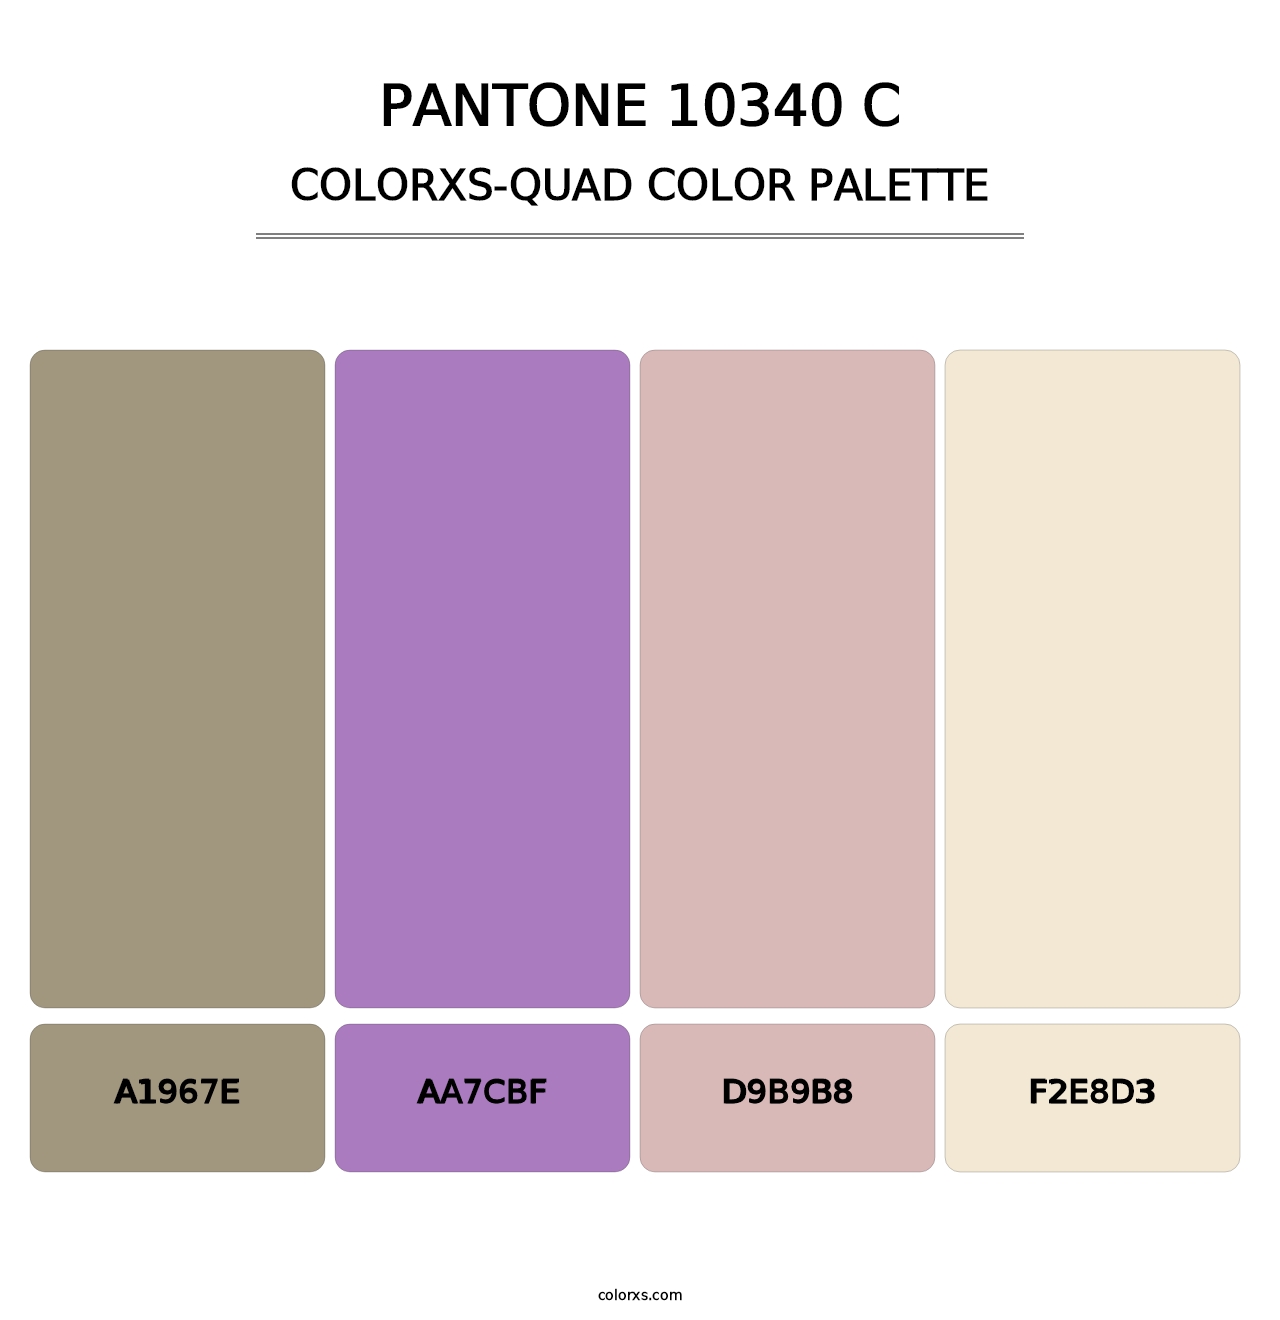 PANTONE 10340 C - Colorxs Quad Palette